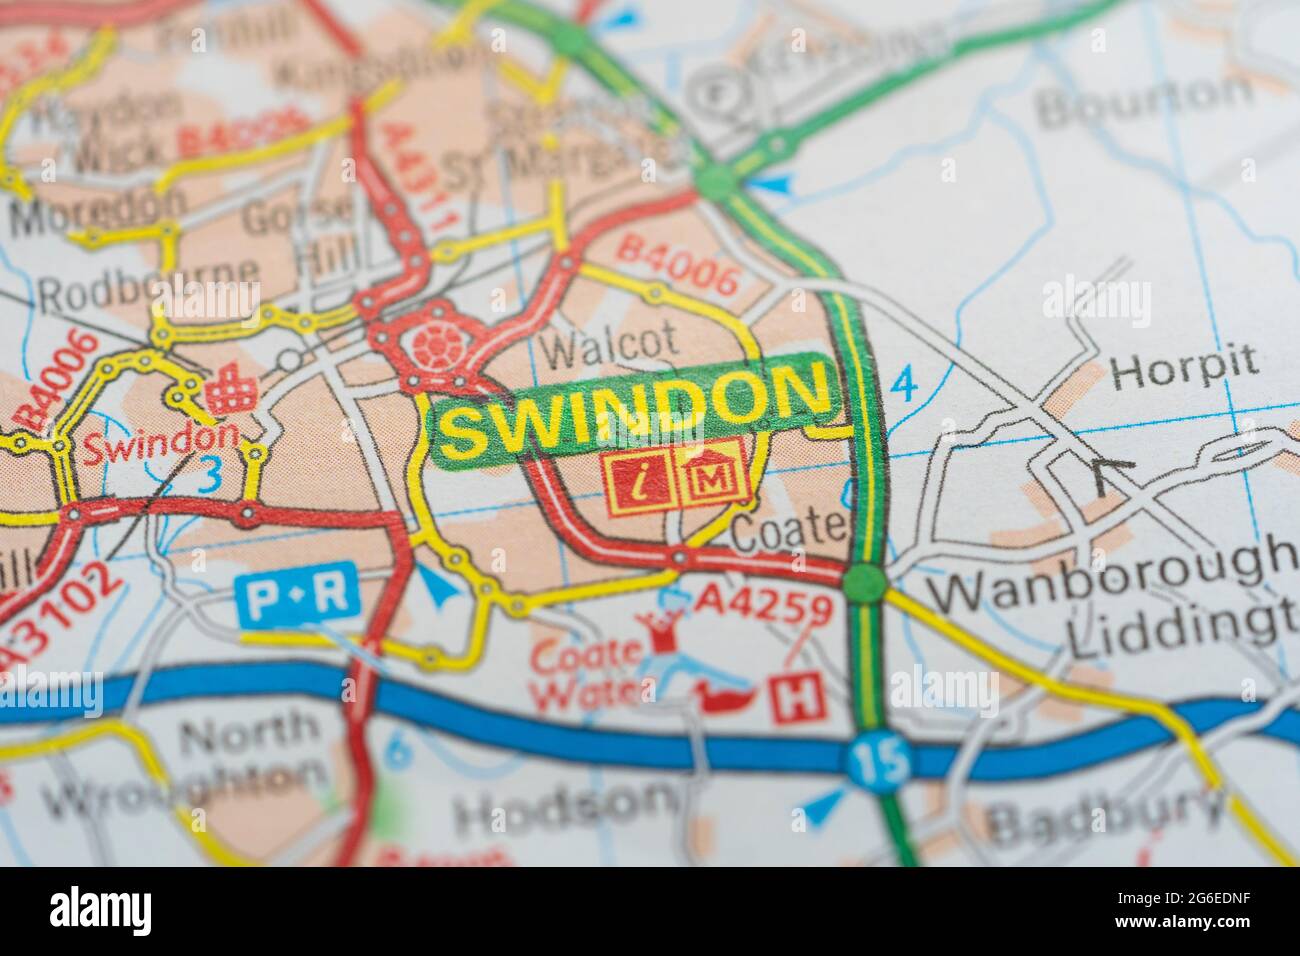 Eine Makroaufnahme einer Seite in einem gedruckten Roadmap-Atlas, der die Stadt Swindon in der Grafschaft Wiltshire in England zeigt Stockfoto